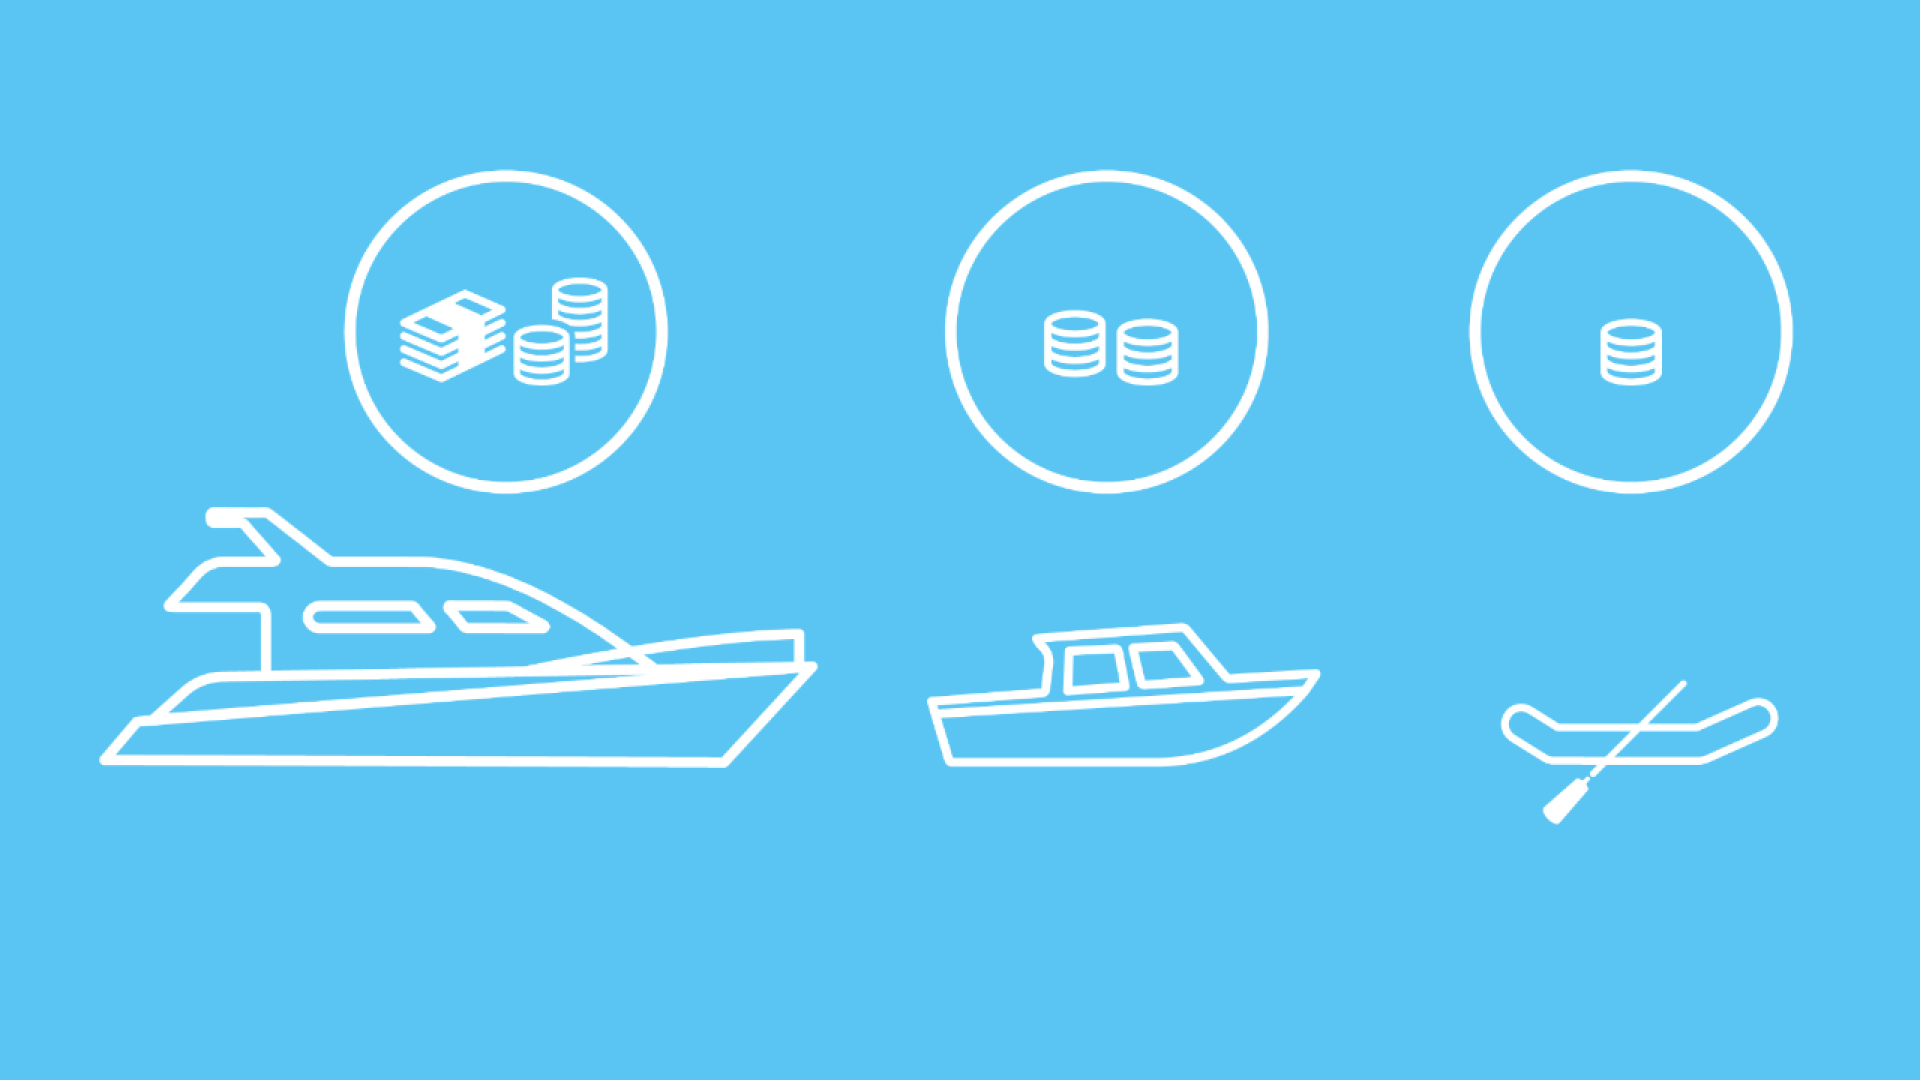 Eine Yacht, ein kleines Boot und ein Paddelboot. Die Anzahl der abgebildeten Münzen gibt die jeweiligen Kosten der Wassersportversicherung an.